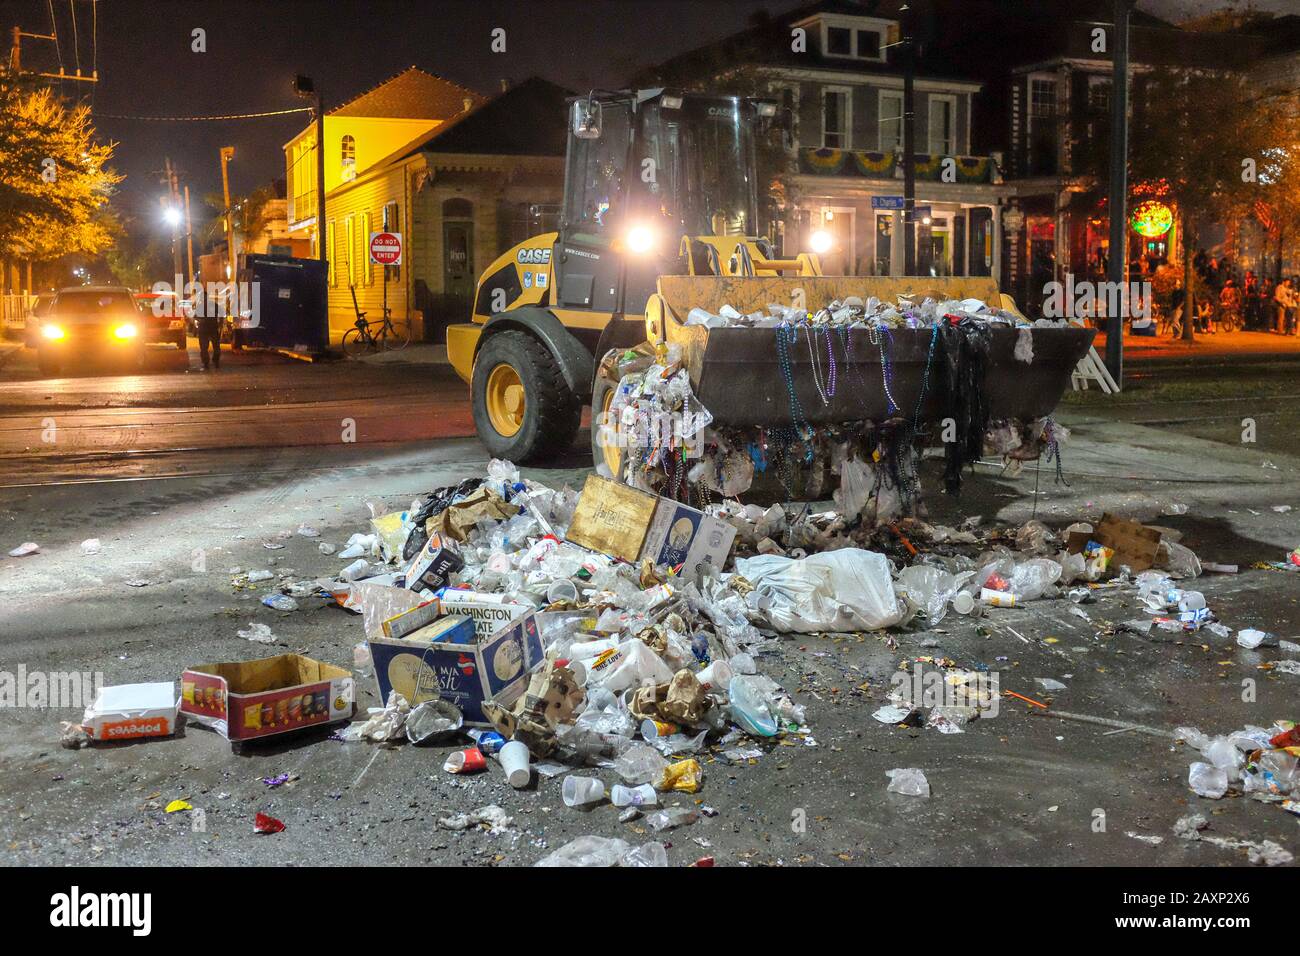 Pulizia Dopo La Parata Di Mardi Gras Su St. Charles Avenue A New Orleans Foto Stock